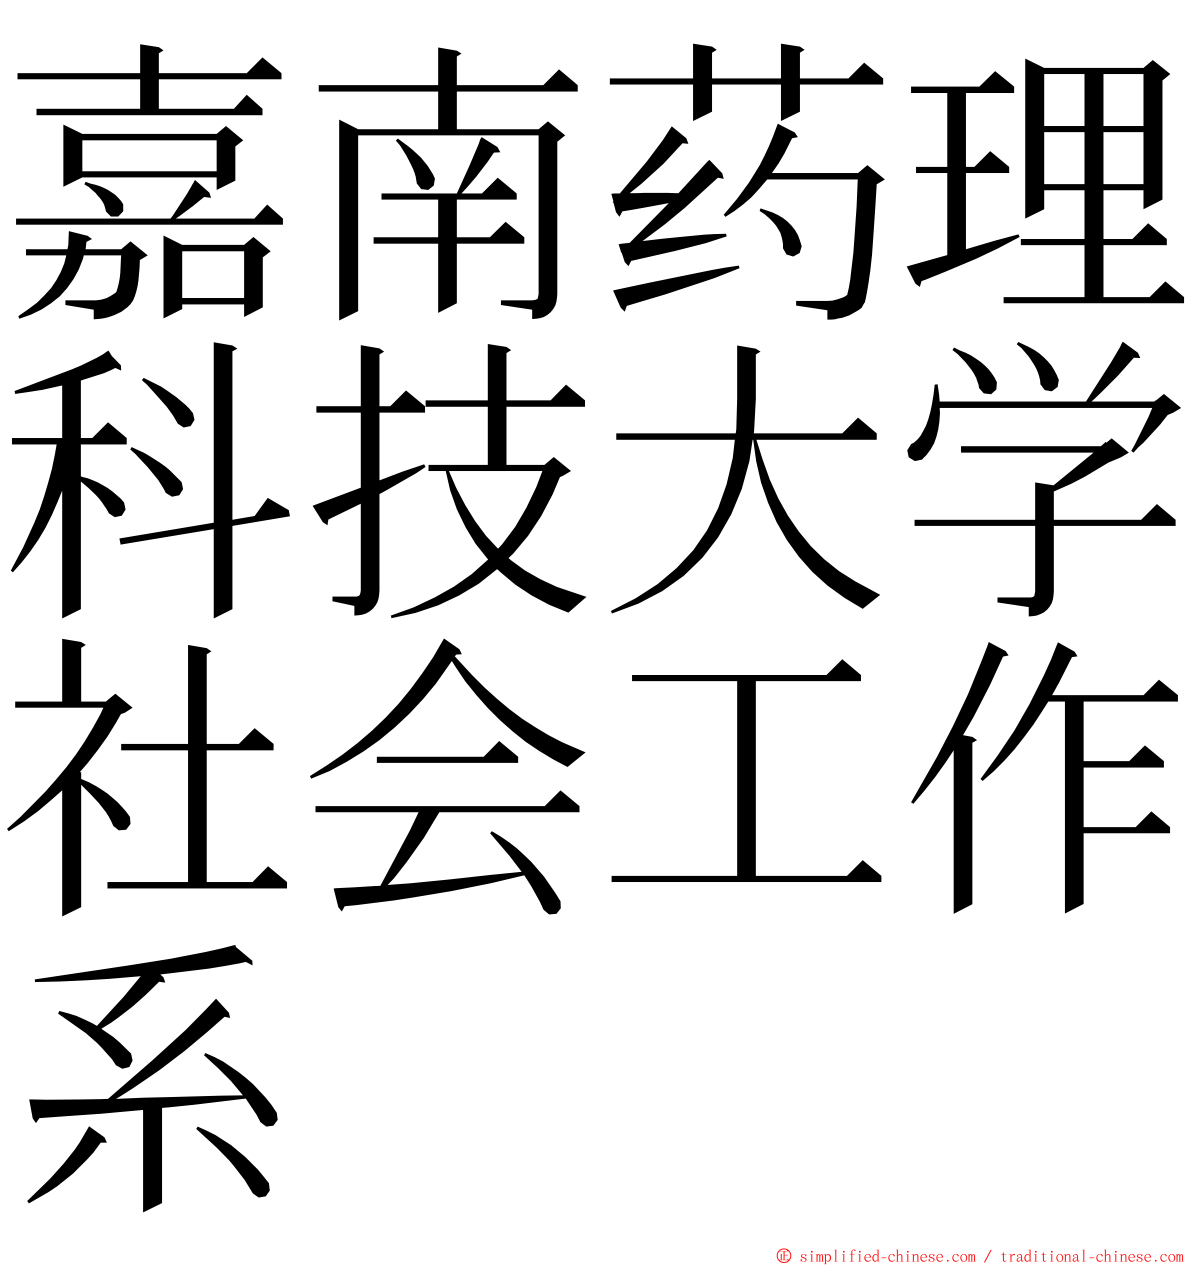 嘉南药理科技大学社会工作系 ming font